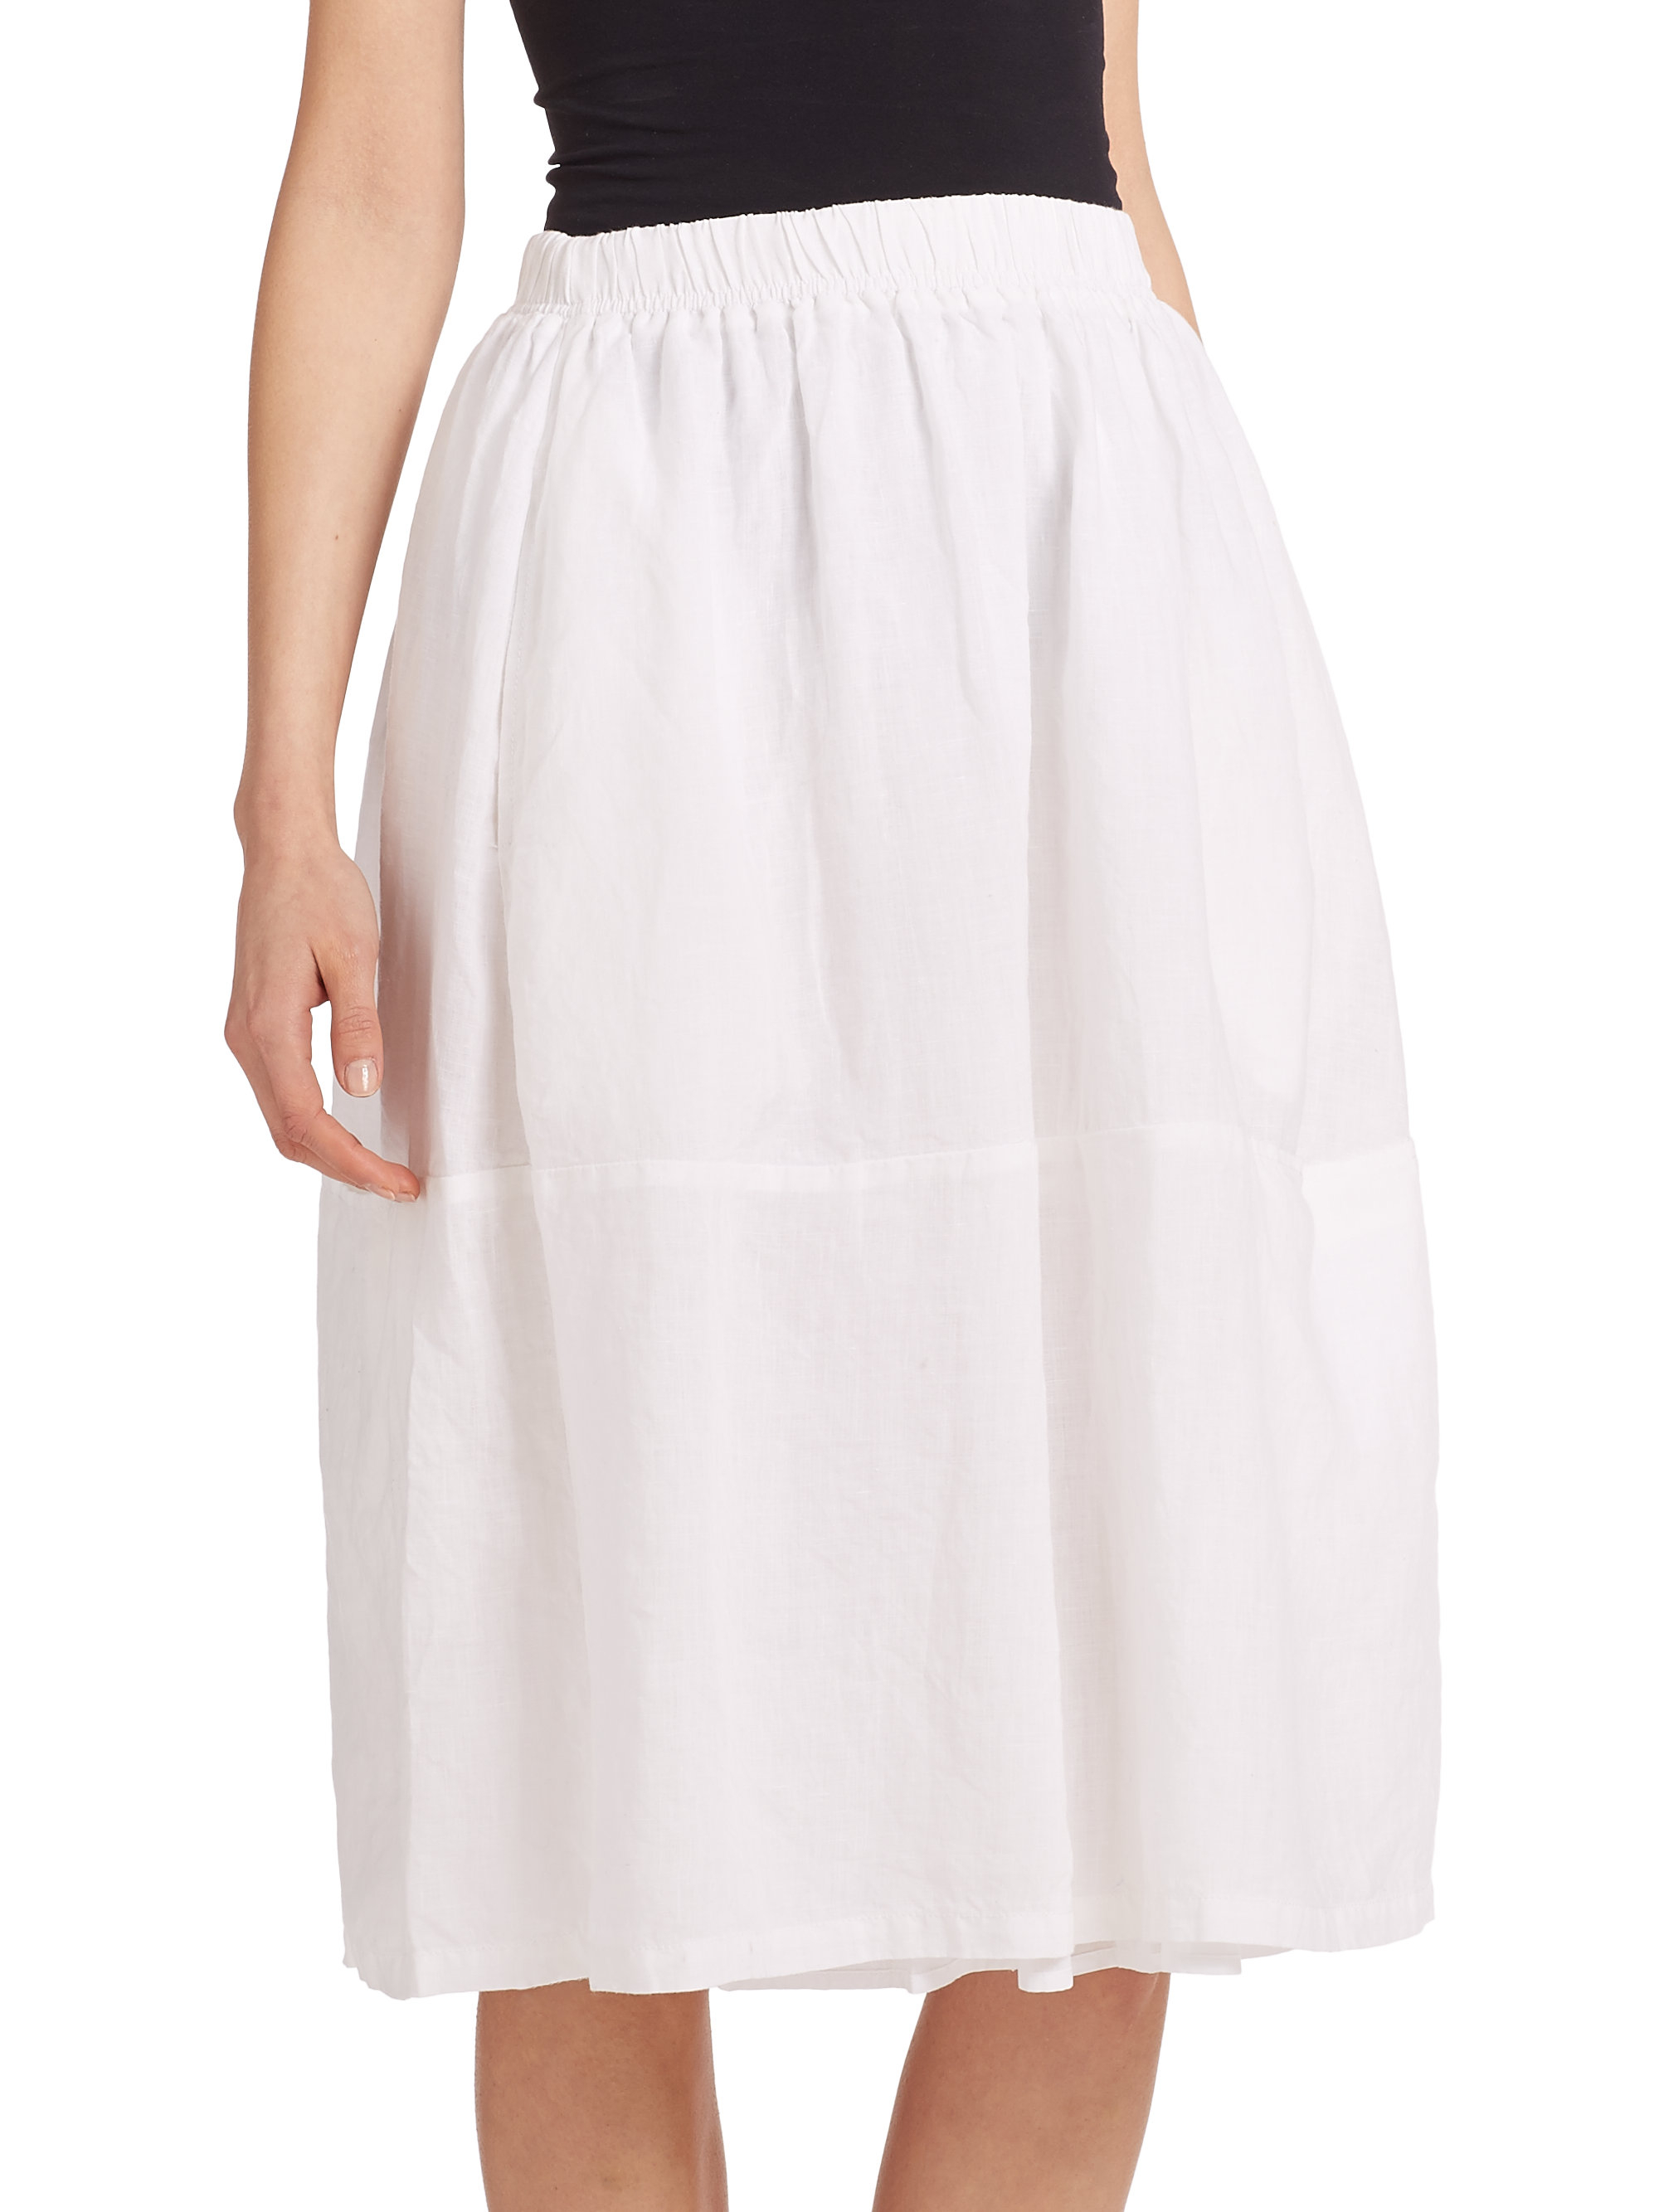 Eileen Fisher Linen Skirt in White - Lyst